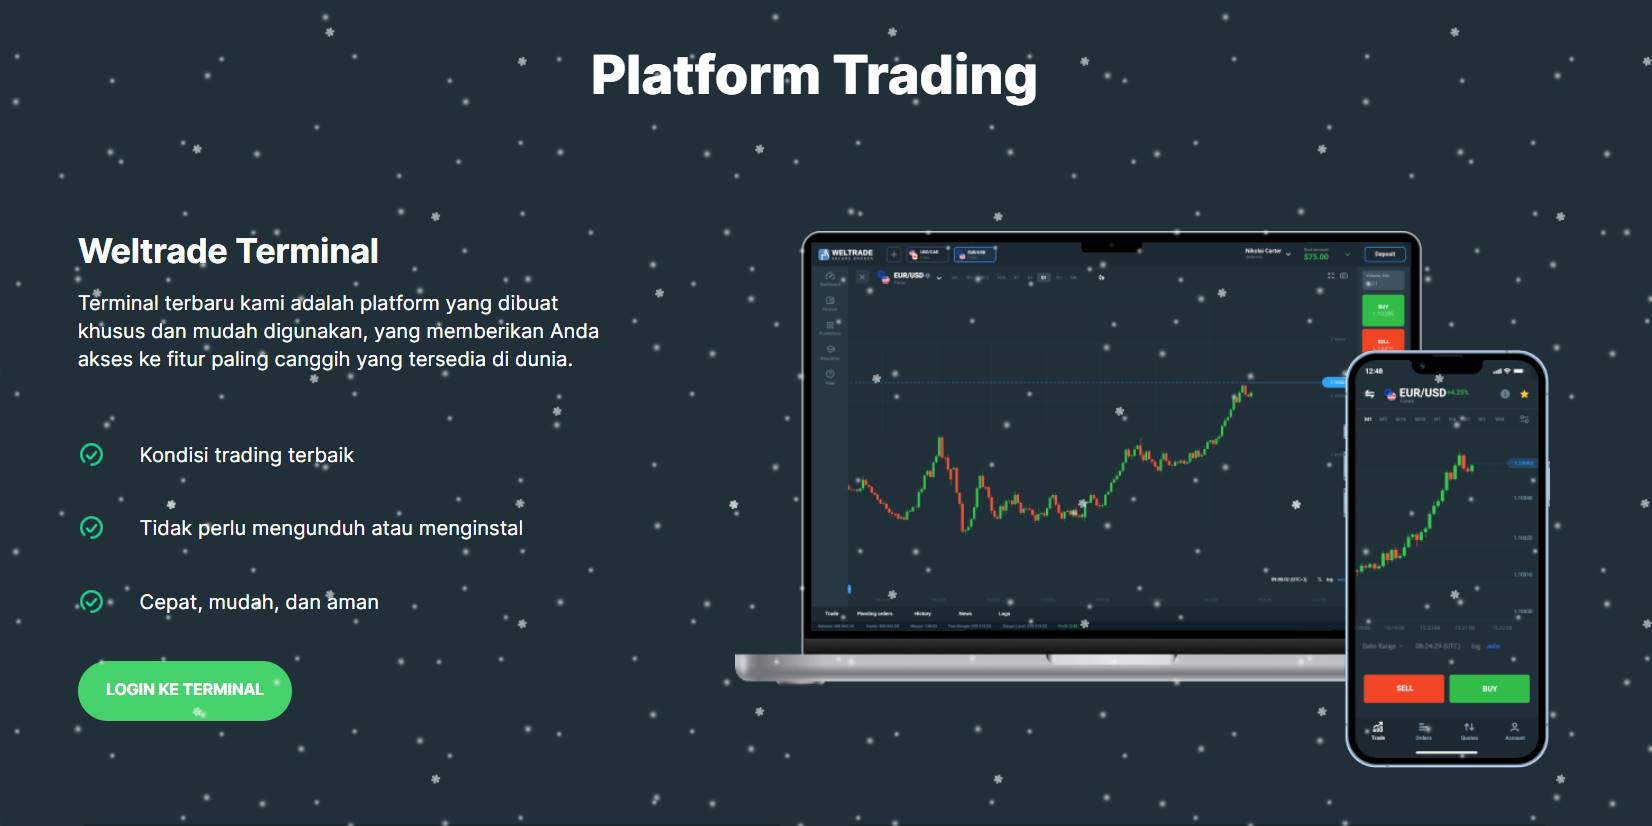 platform trading weltrade terminal